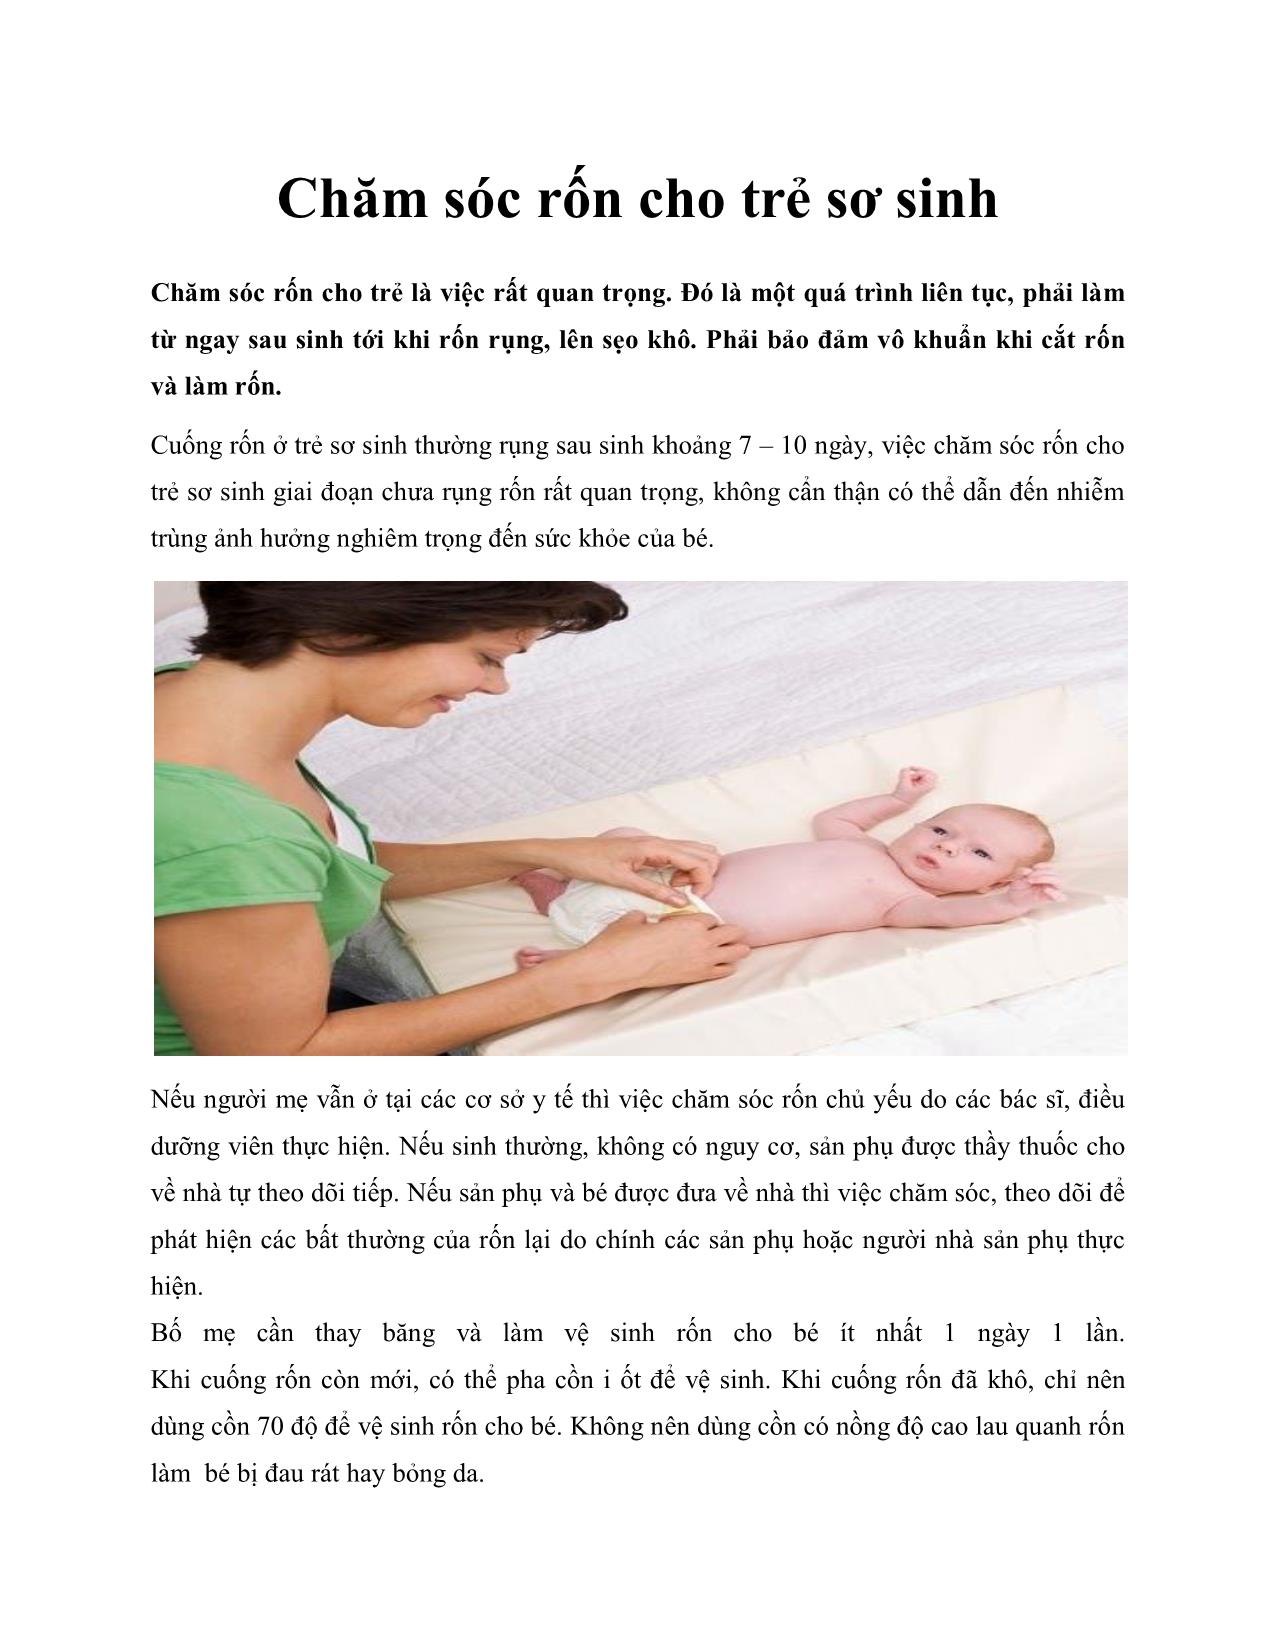 Chăm sóc rốn cho trẻ sơ sinh trang 1